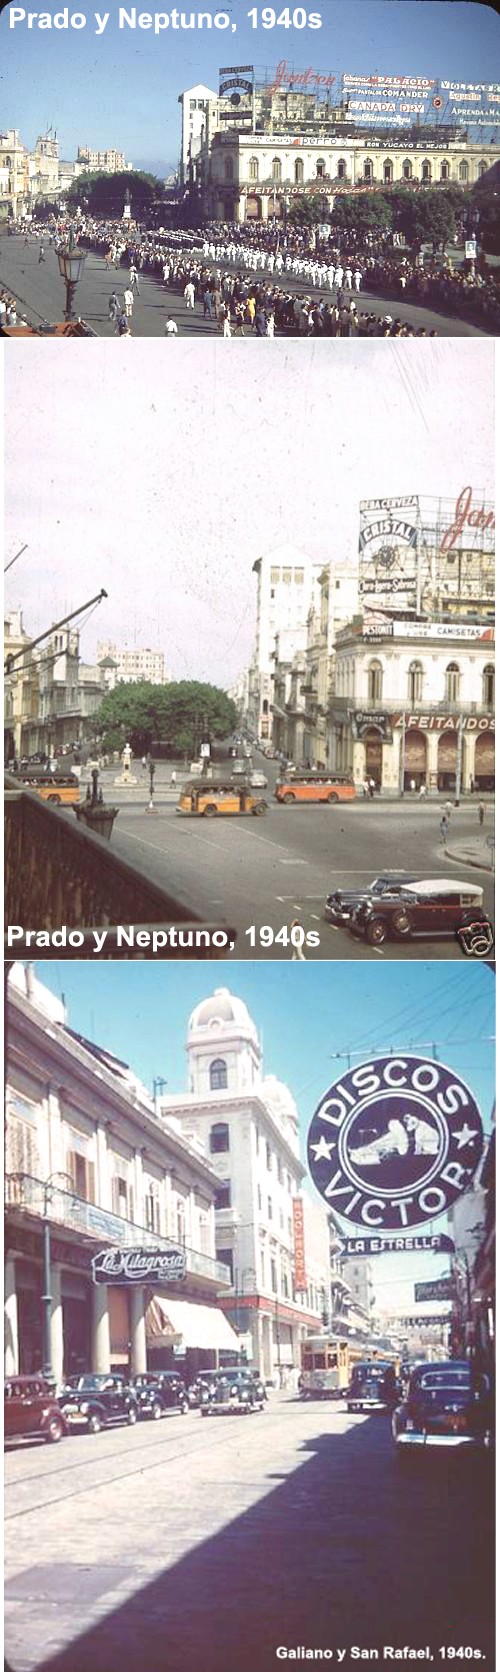 antes - FOTOS DE CUBA ! SOLAMENTES DE ANTES DEL 1958 !!!! - Página 26 Havana11